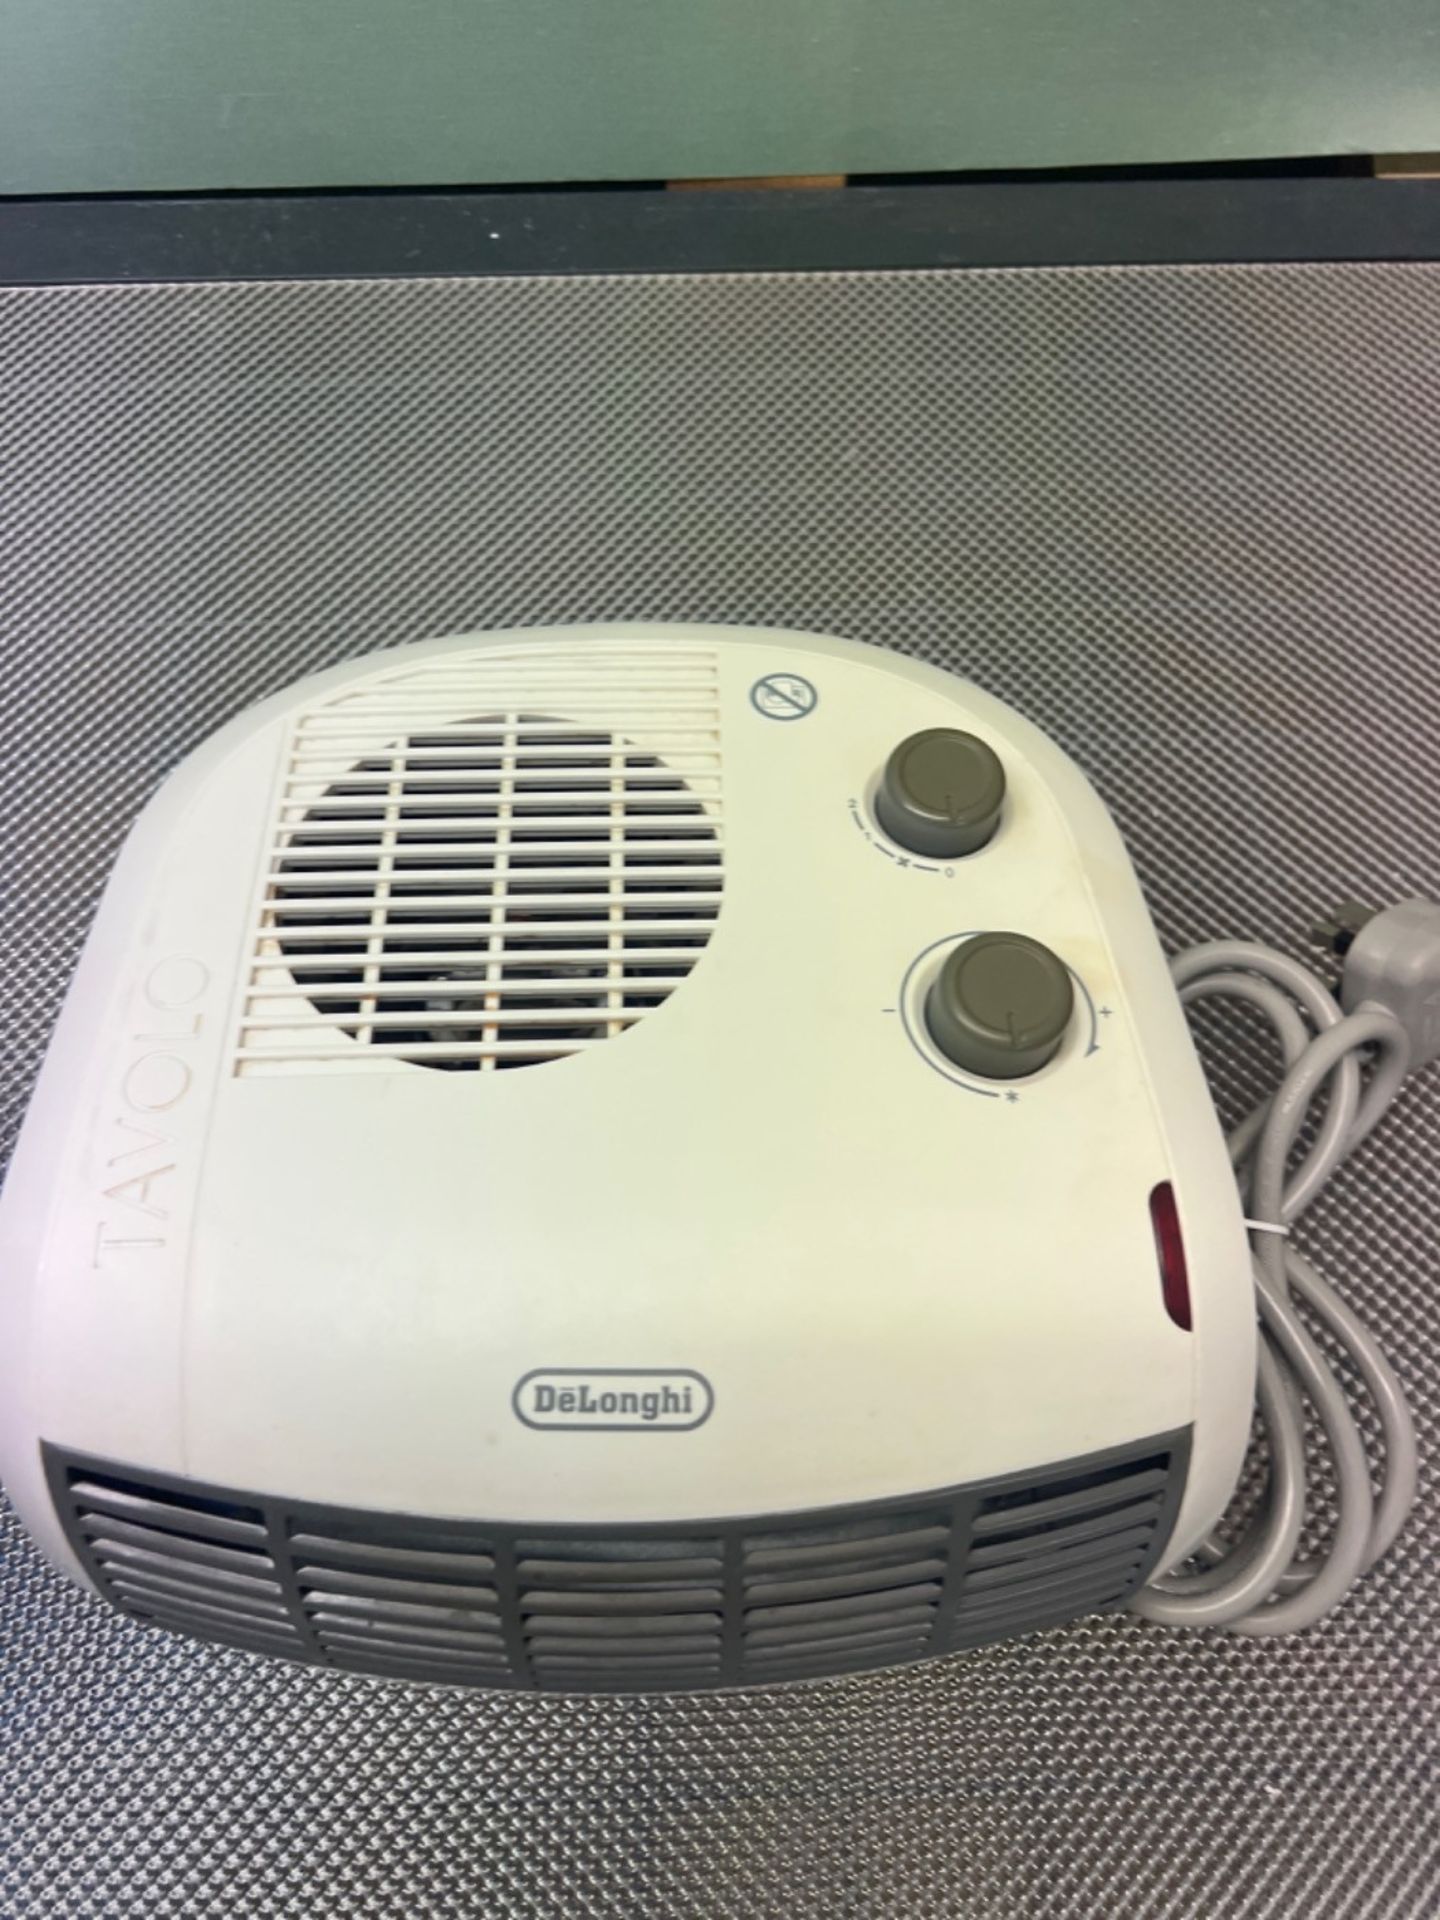 De'Longhi HTF3033 Fan Heater - White - Image 3 of 3